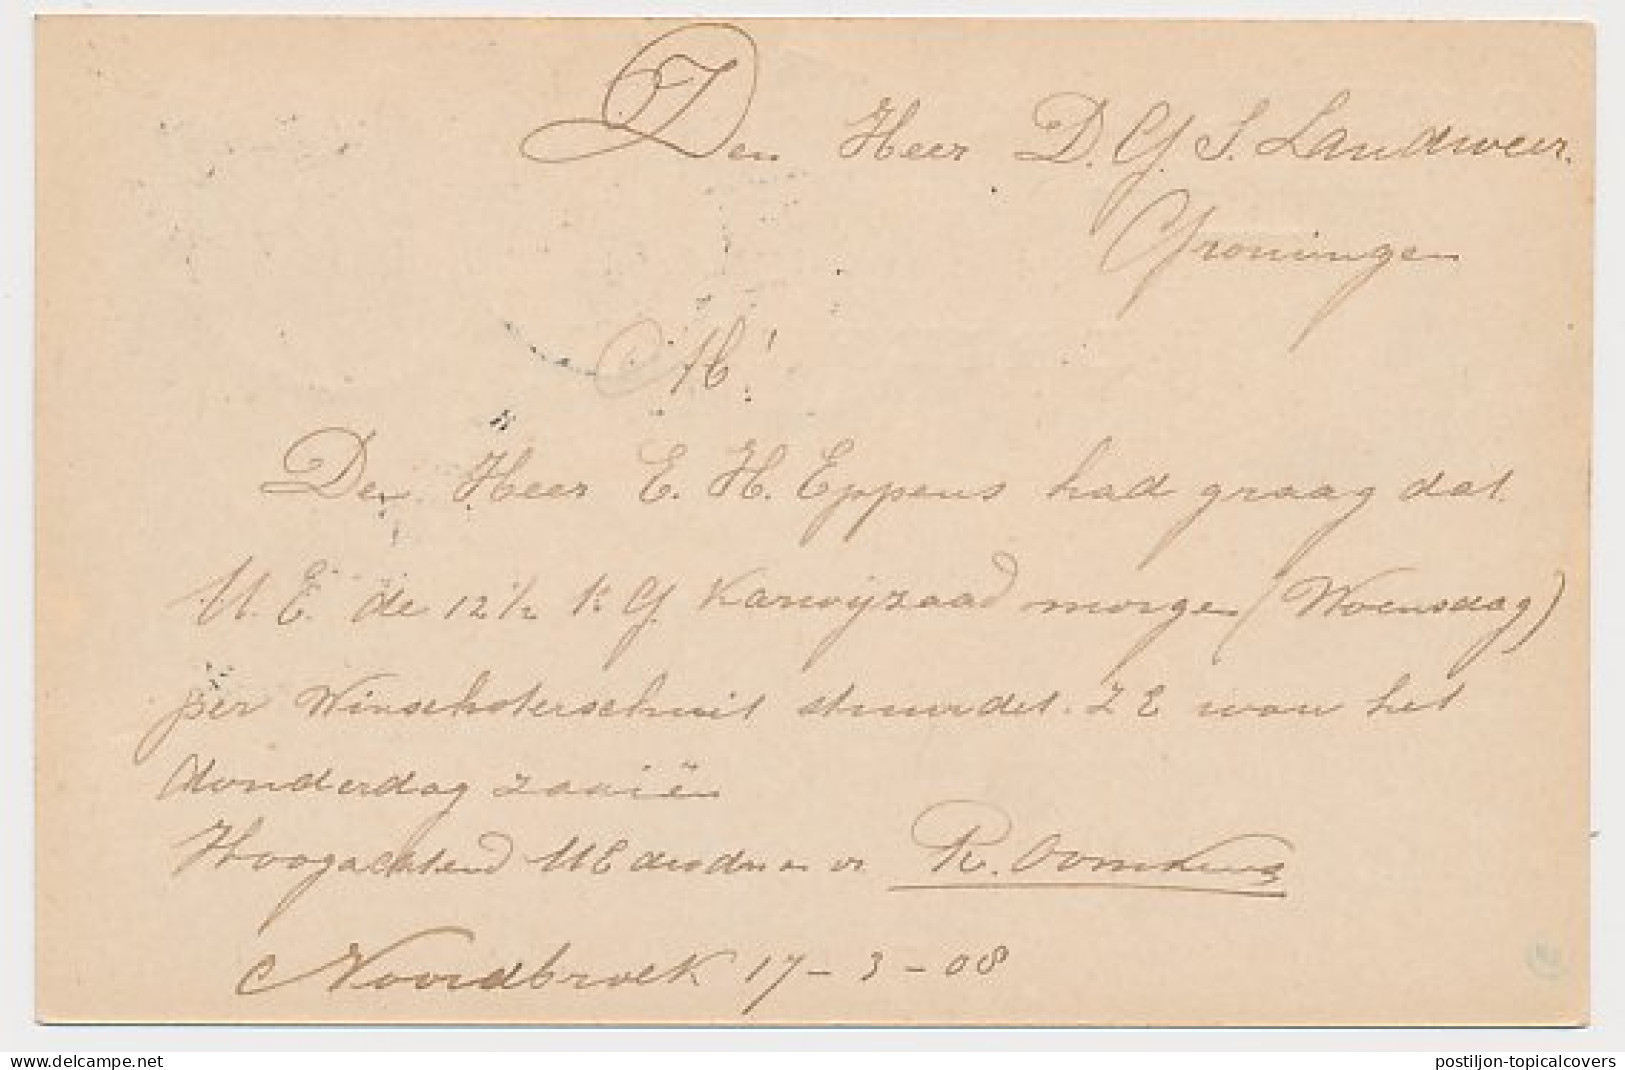 Firma Briefkaart Noordbroek 1908 - Molenaar - Non Classés